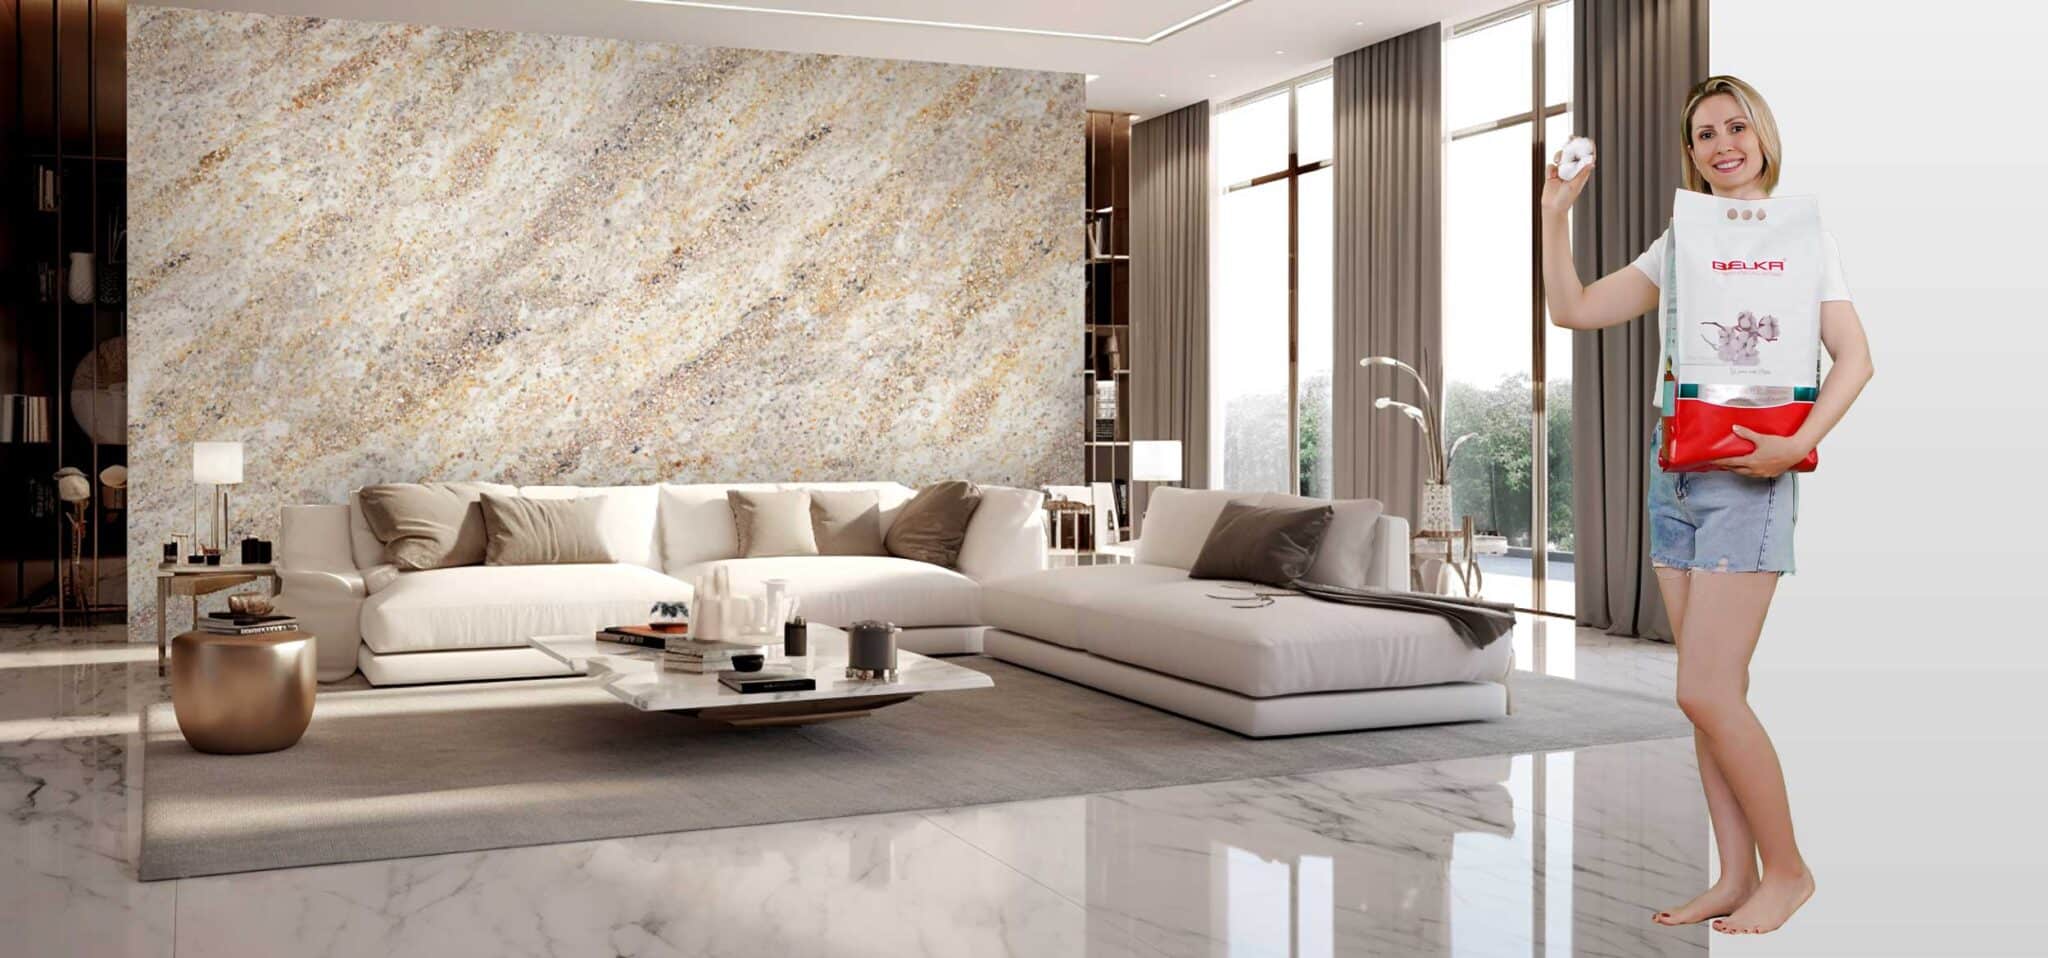 Ein luxuriöses Wohnzimmer mit Belka-Tapete in Marmor-Design an den Wänden. Eine blonde Frau hält eine Packung Belka.